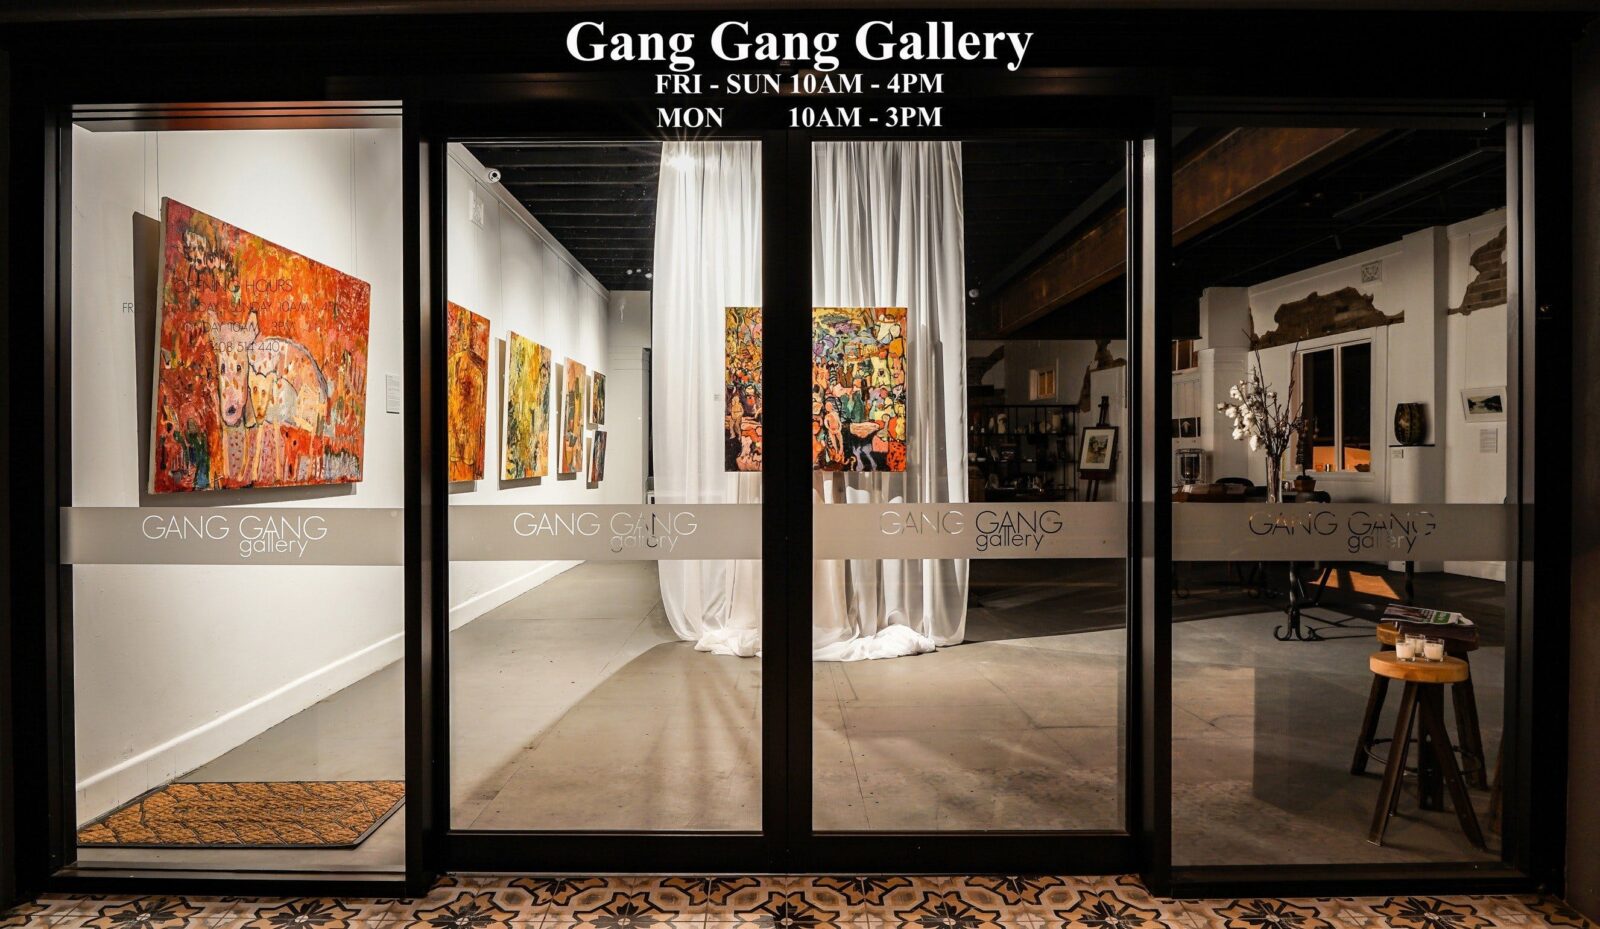 Gang Gang Gallery